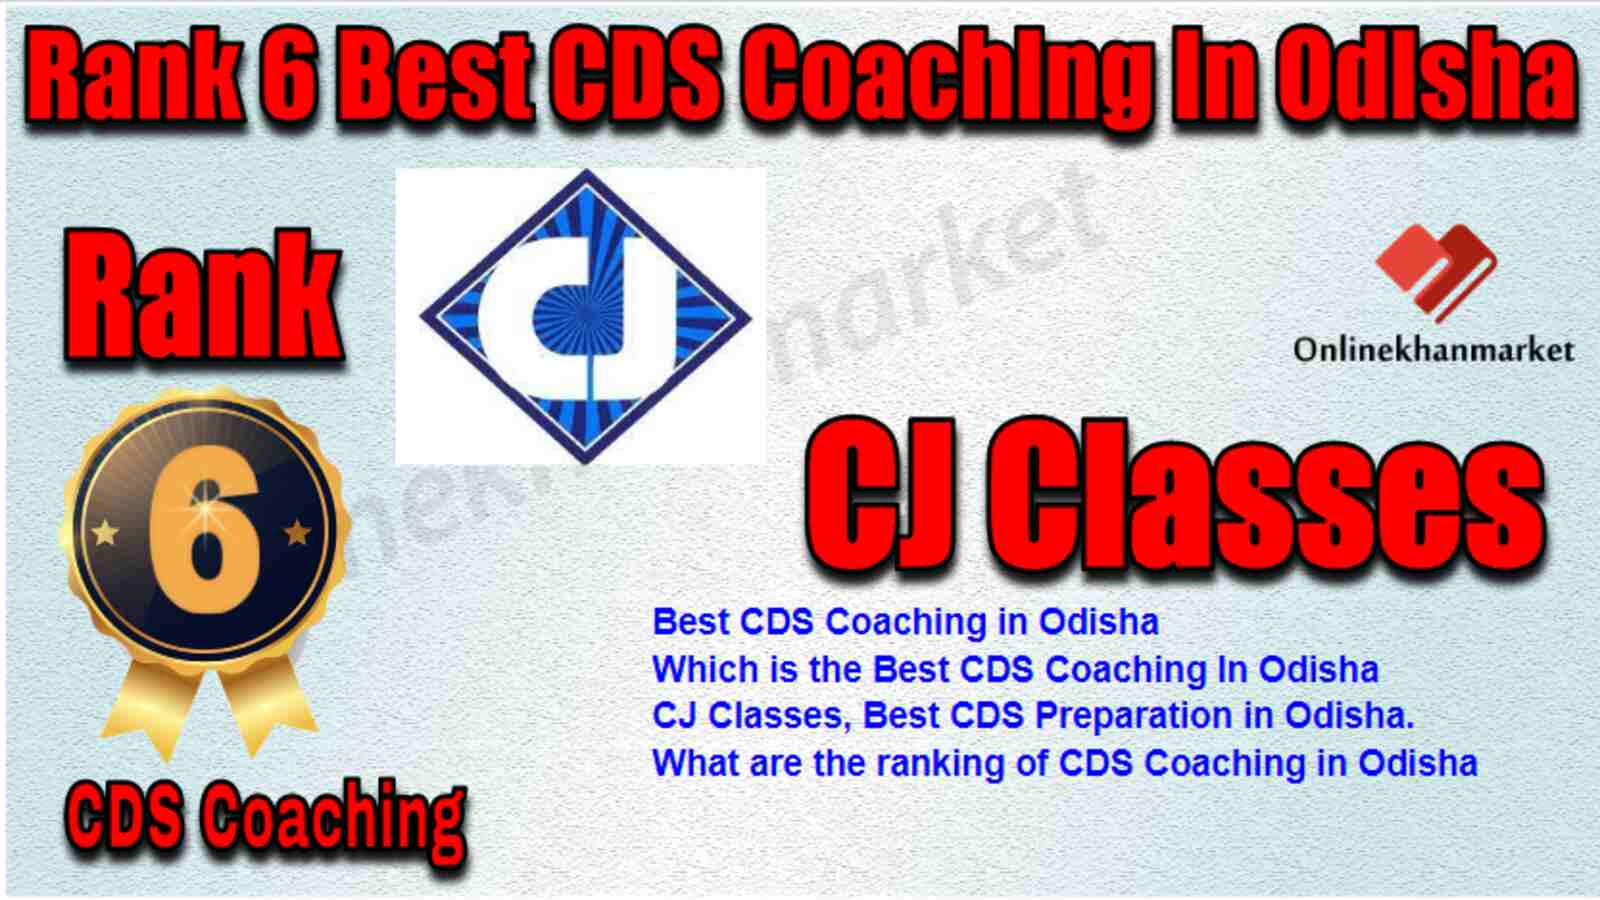 Rank 6 Best CDS Coaching in Odisha